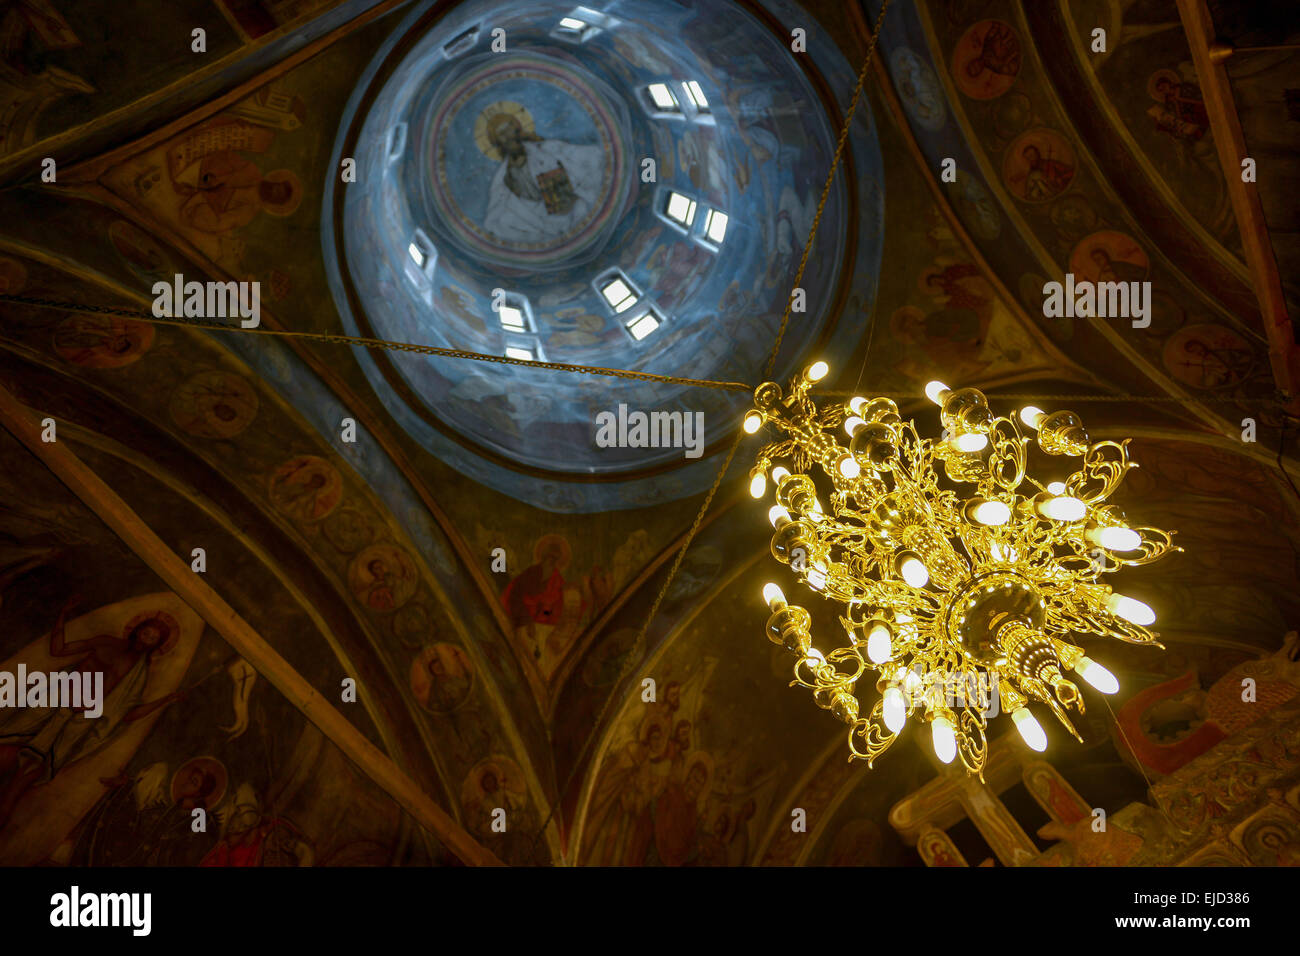 Wunderbare Innendecke einer orthodoxen Kirche Stockfoto